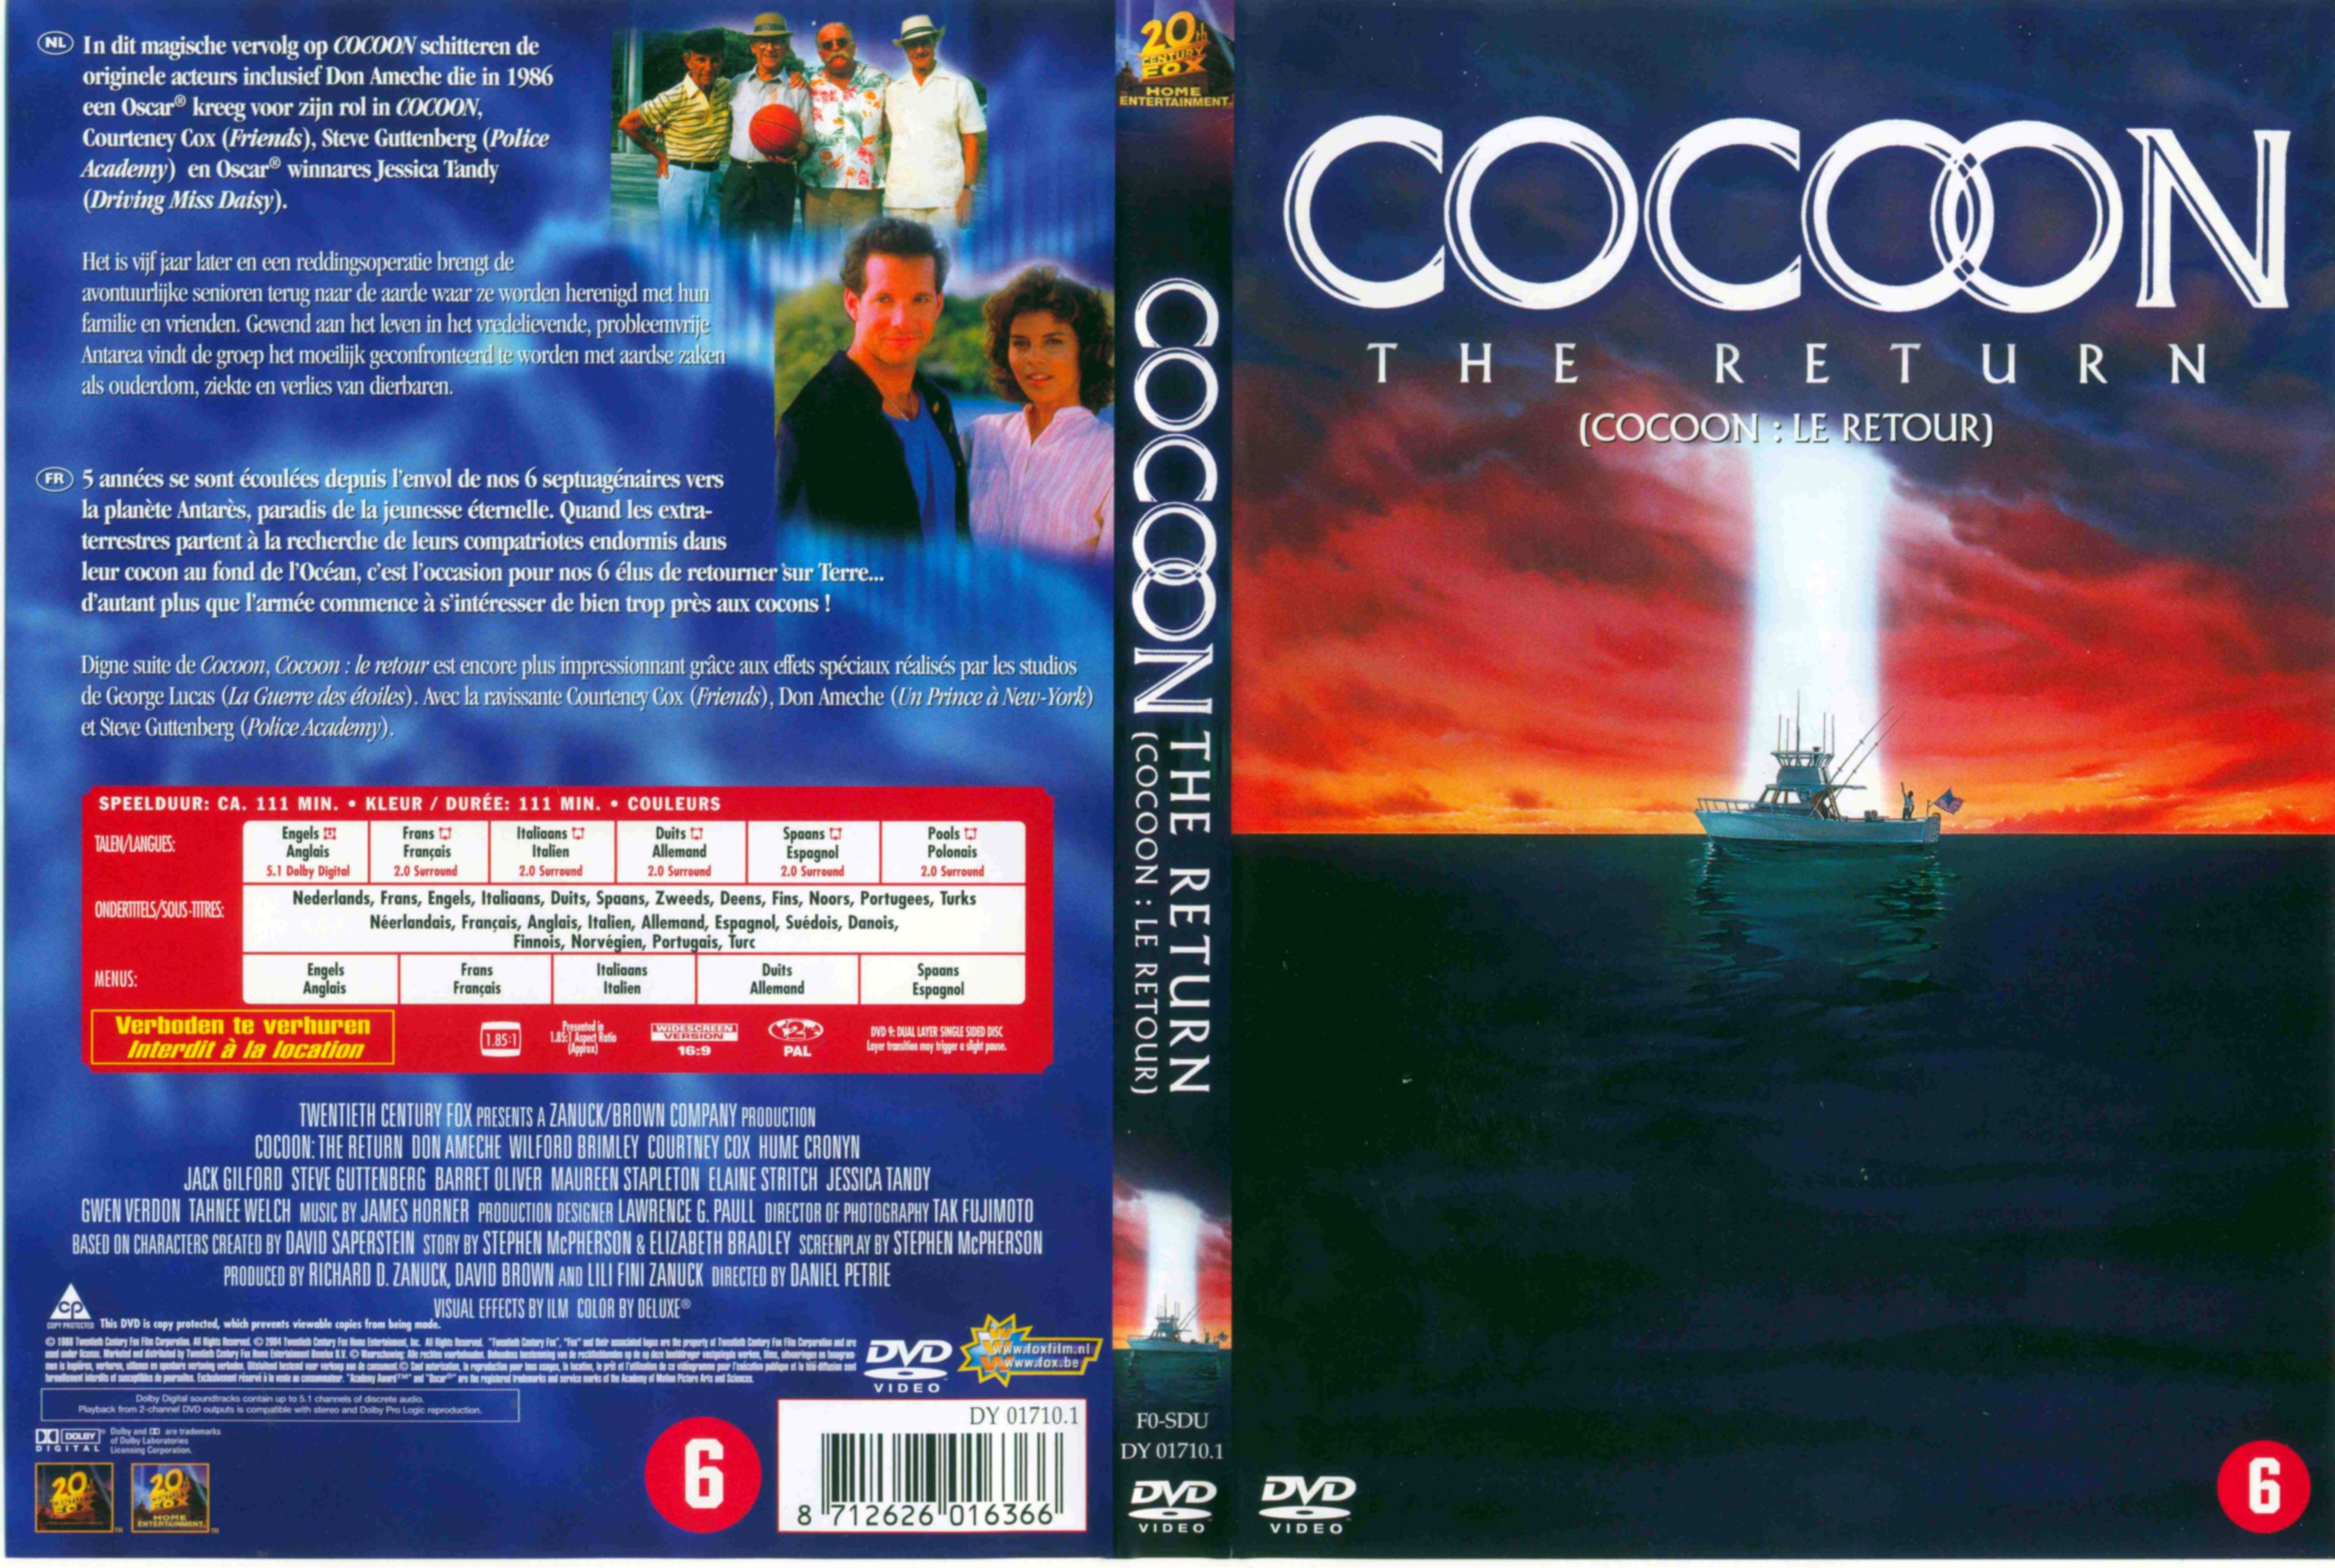 Jaquette DVD Cocoon 2 v3